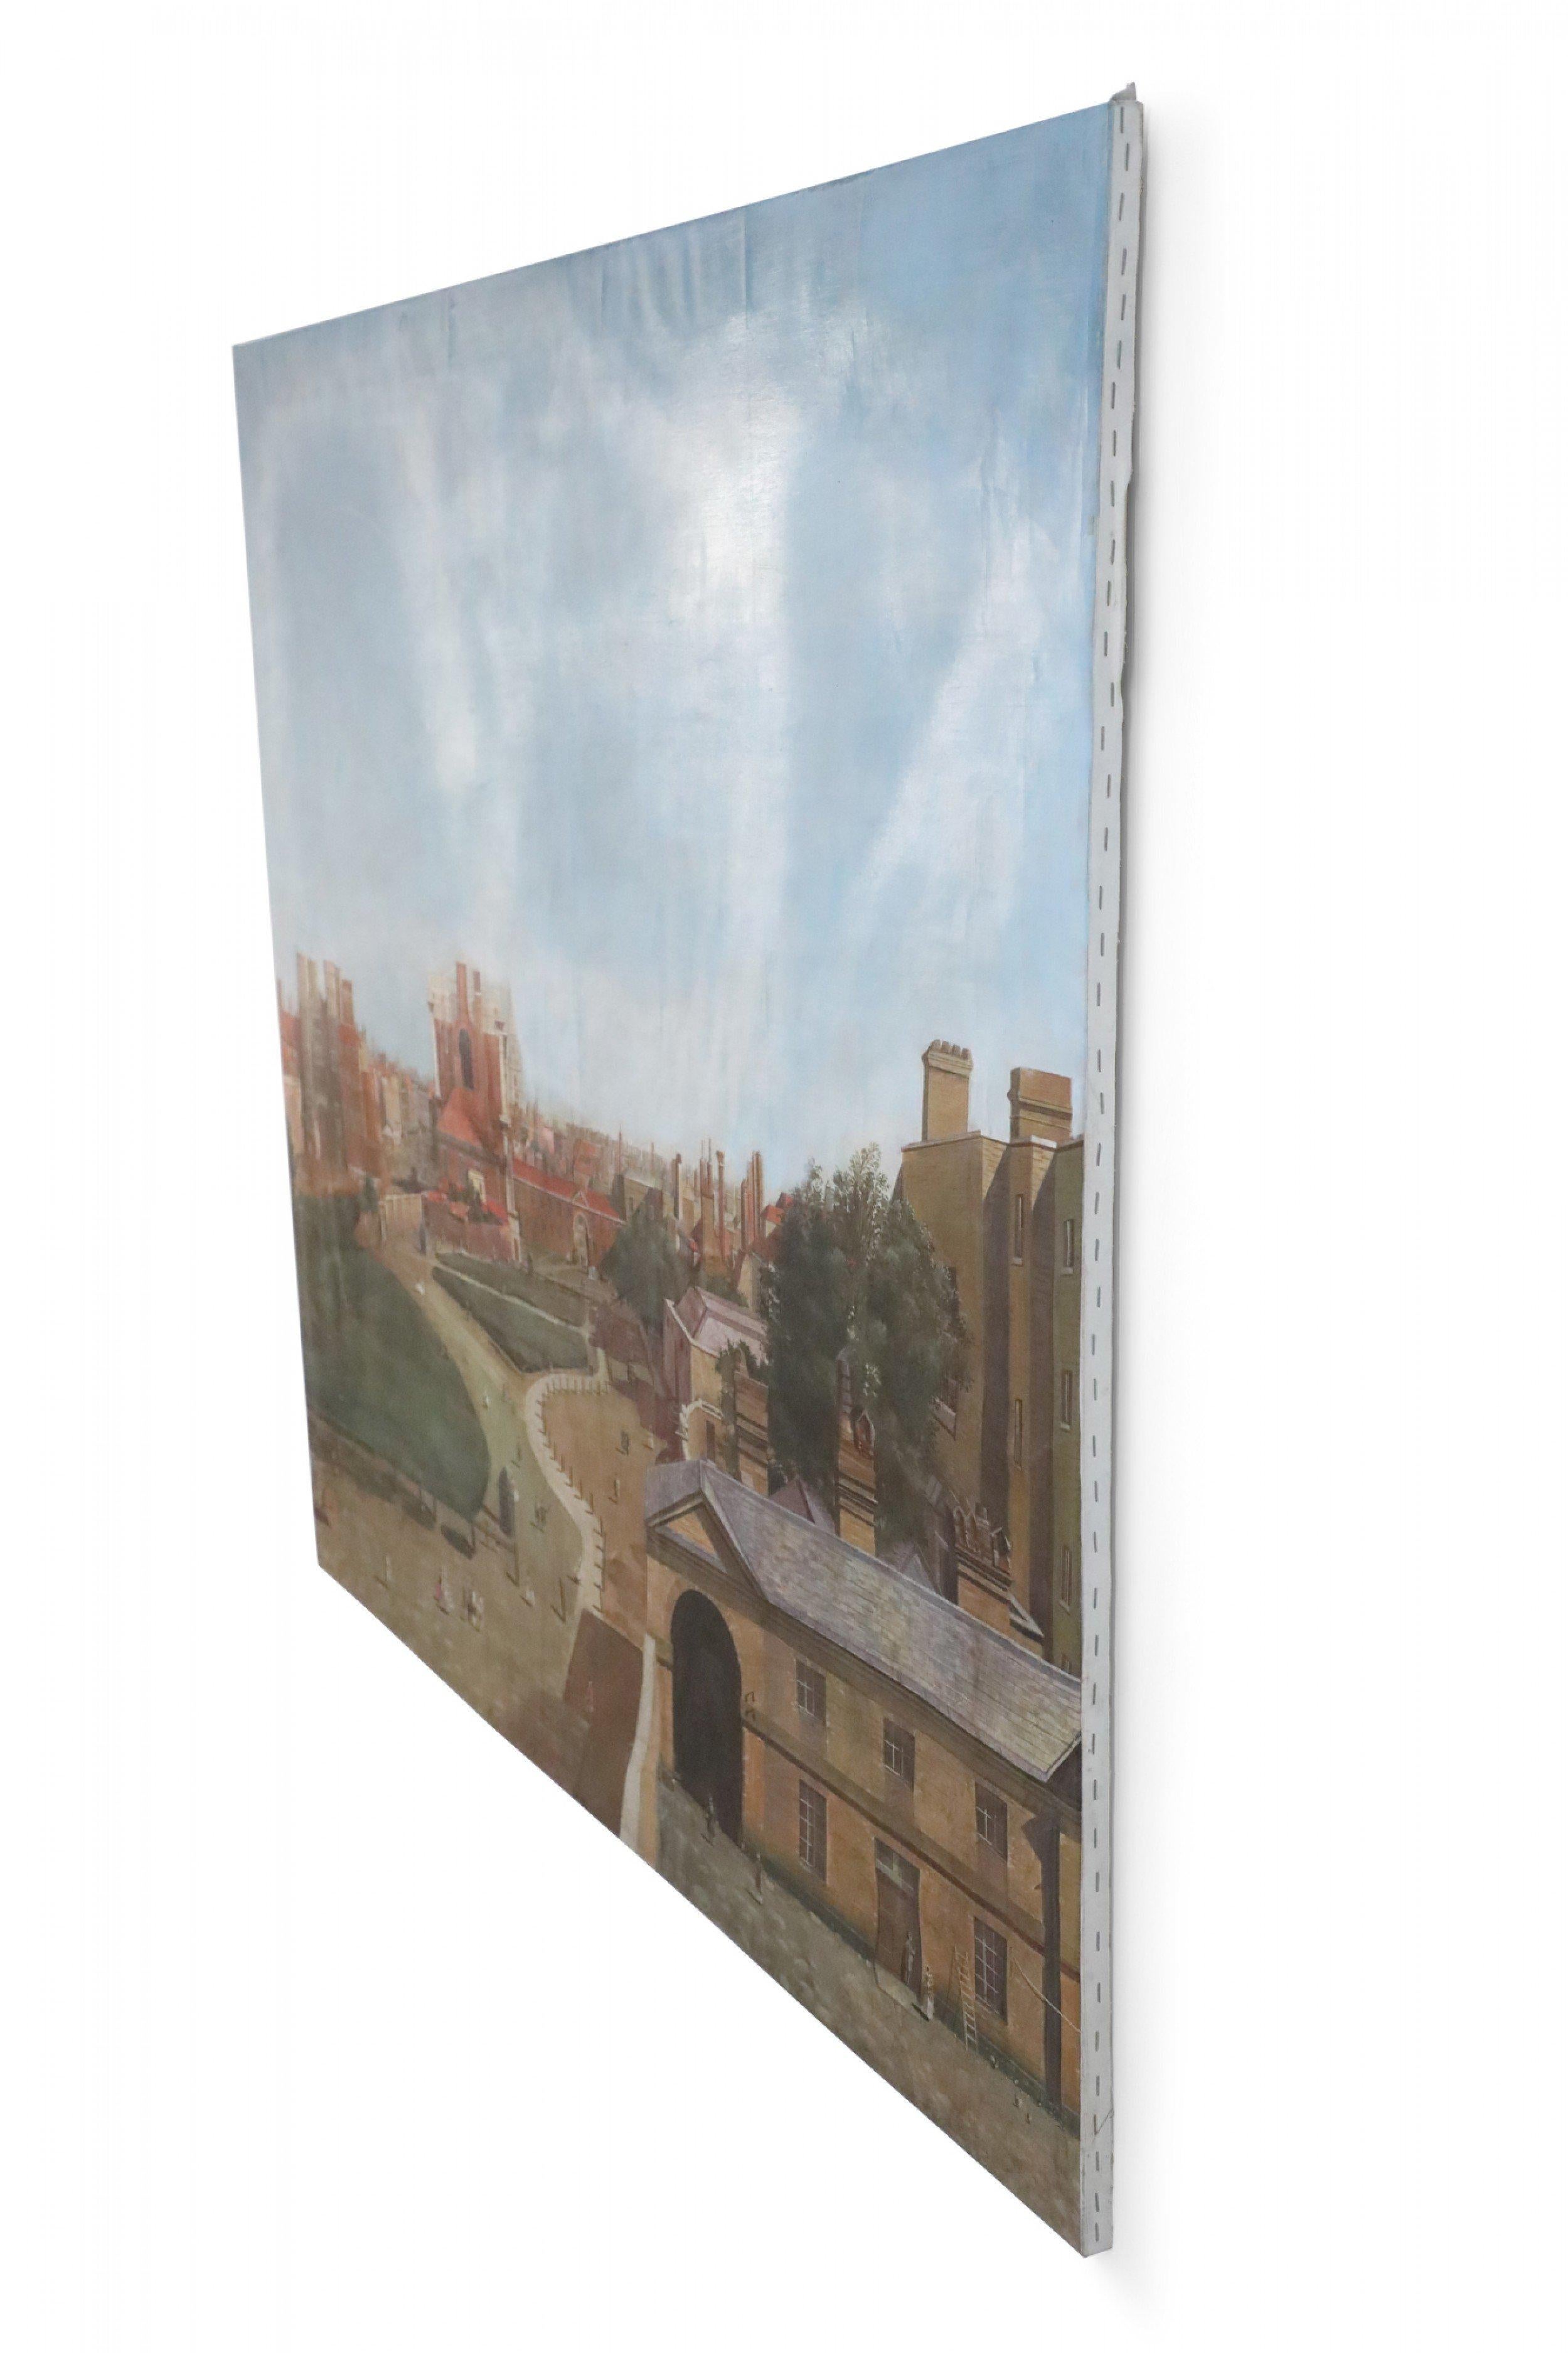 Peinture ancienne (20e siècle) d'une place de ville du 18e siècle prise d'en haut, représentant des personnages en mouvement, de la verdure et des ruelles au centre, et des bâtiments au loin, sous un grand ciel bleu clair. Peint sur une toile